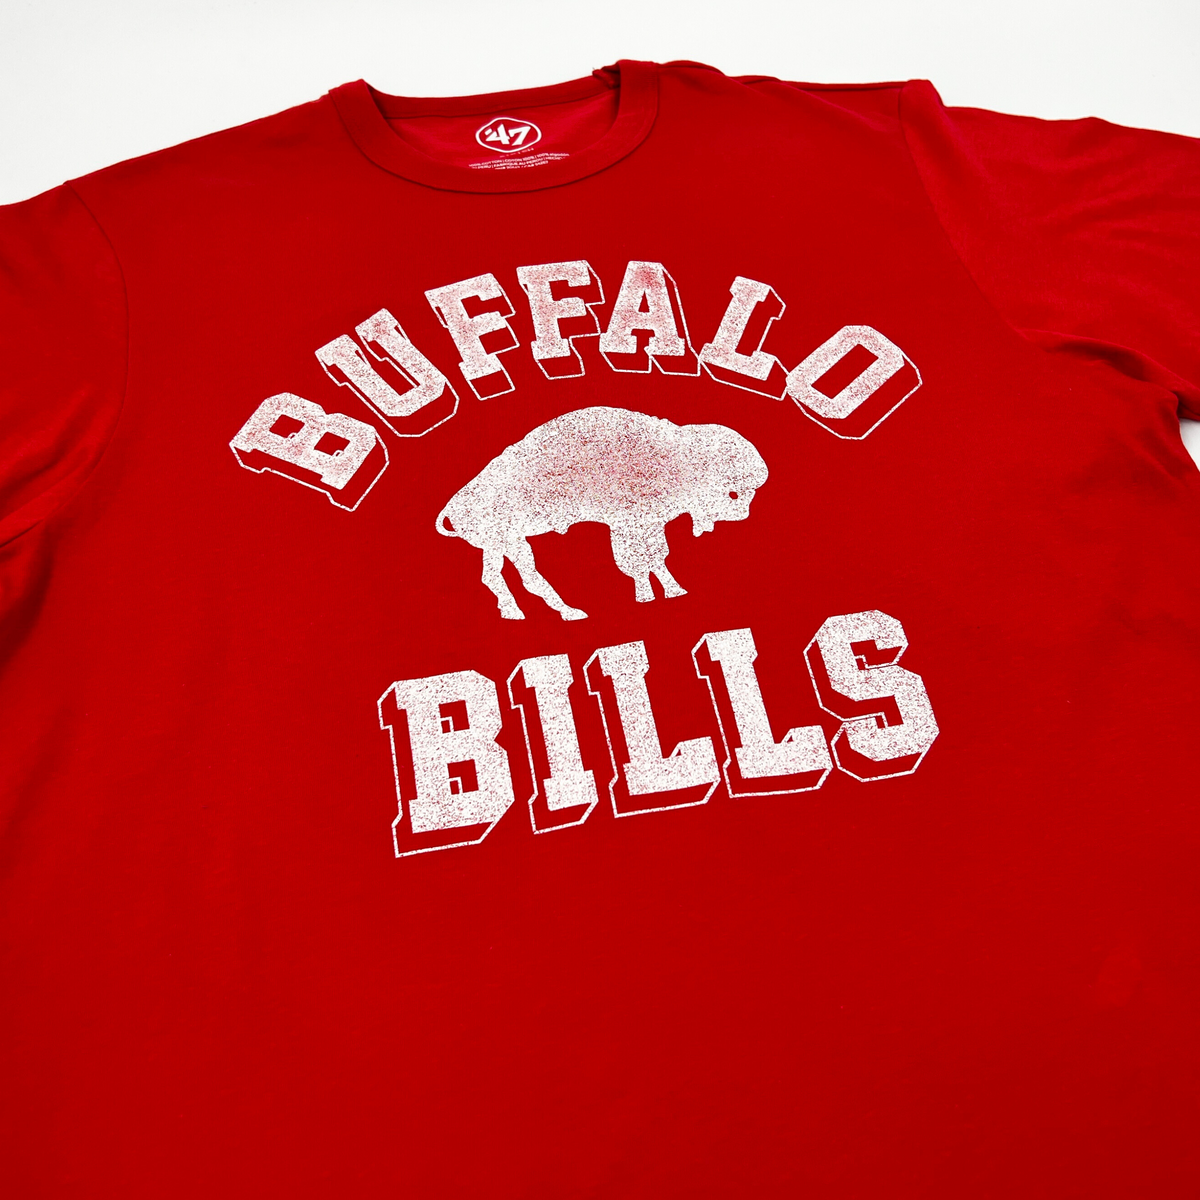 buffalo bills retro t shirt